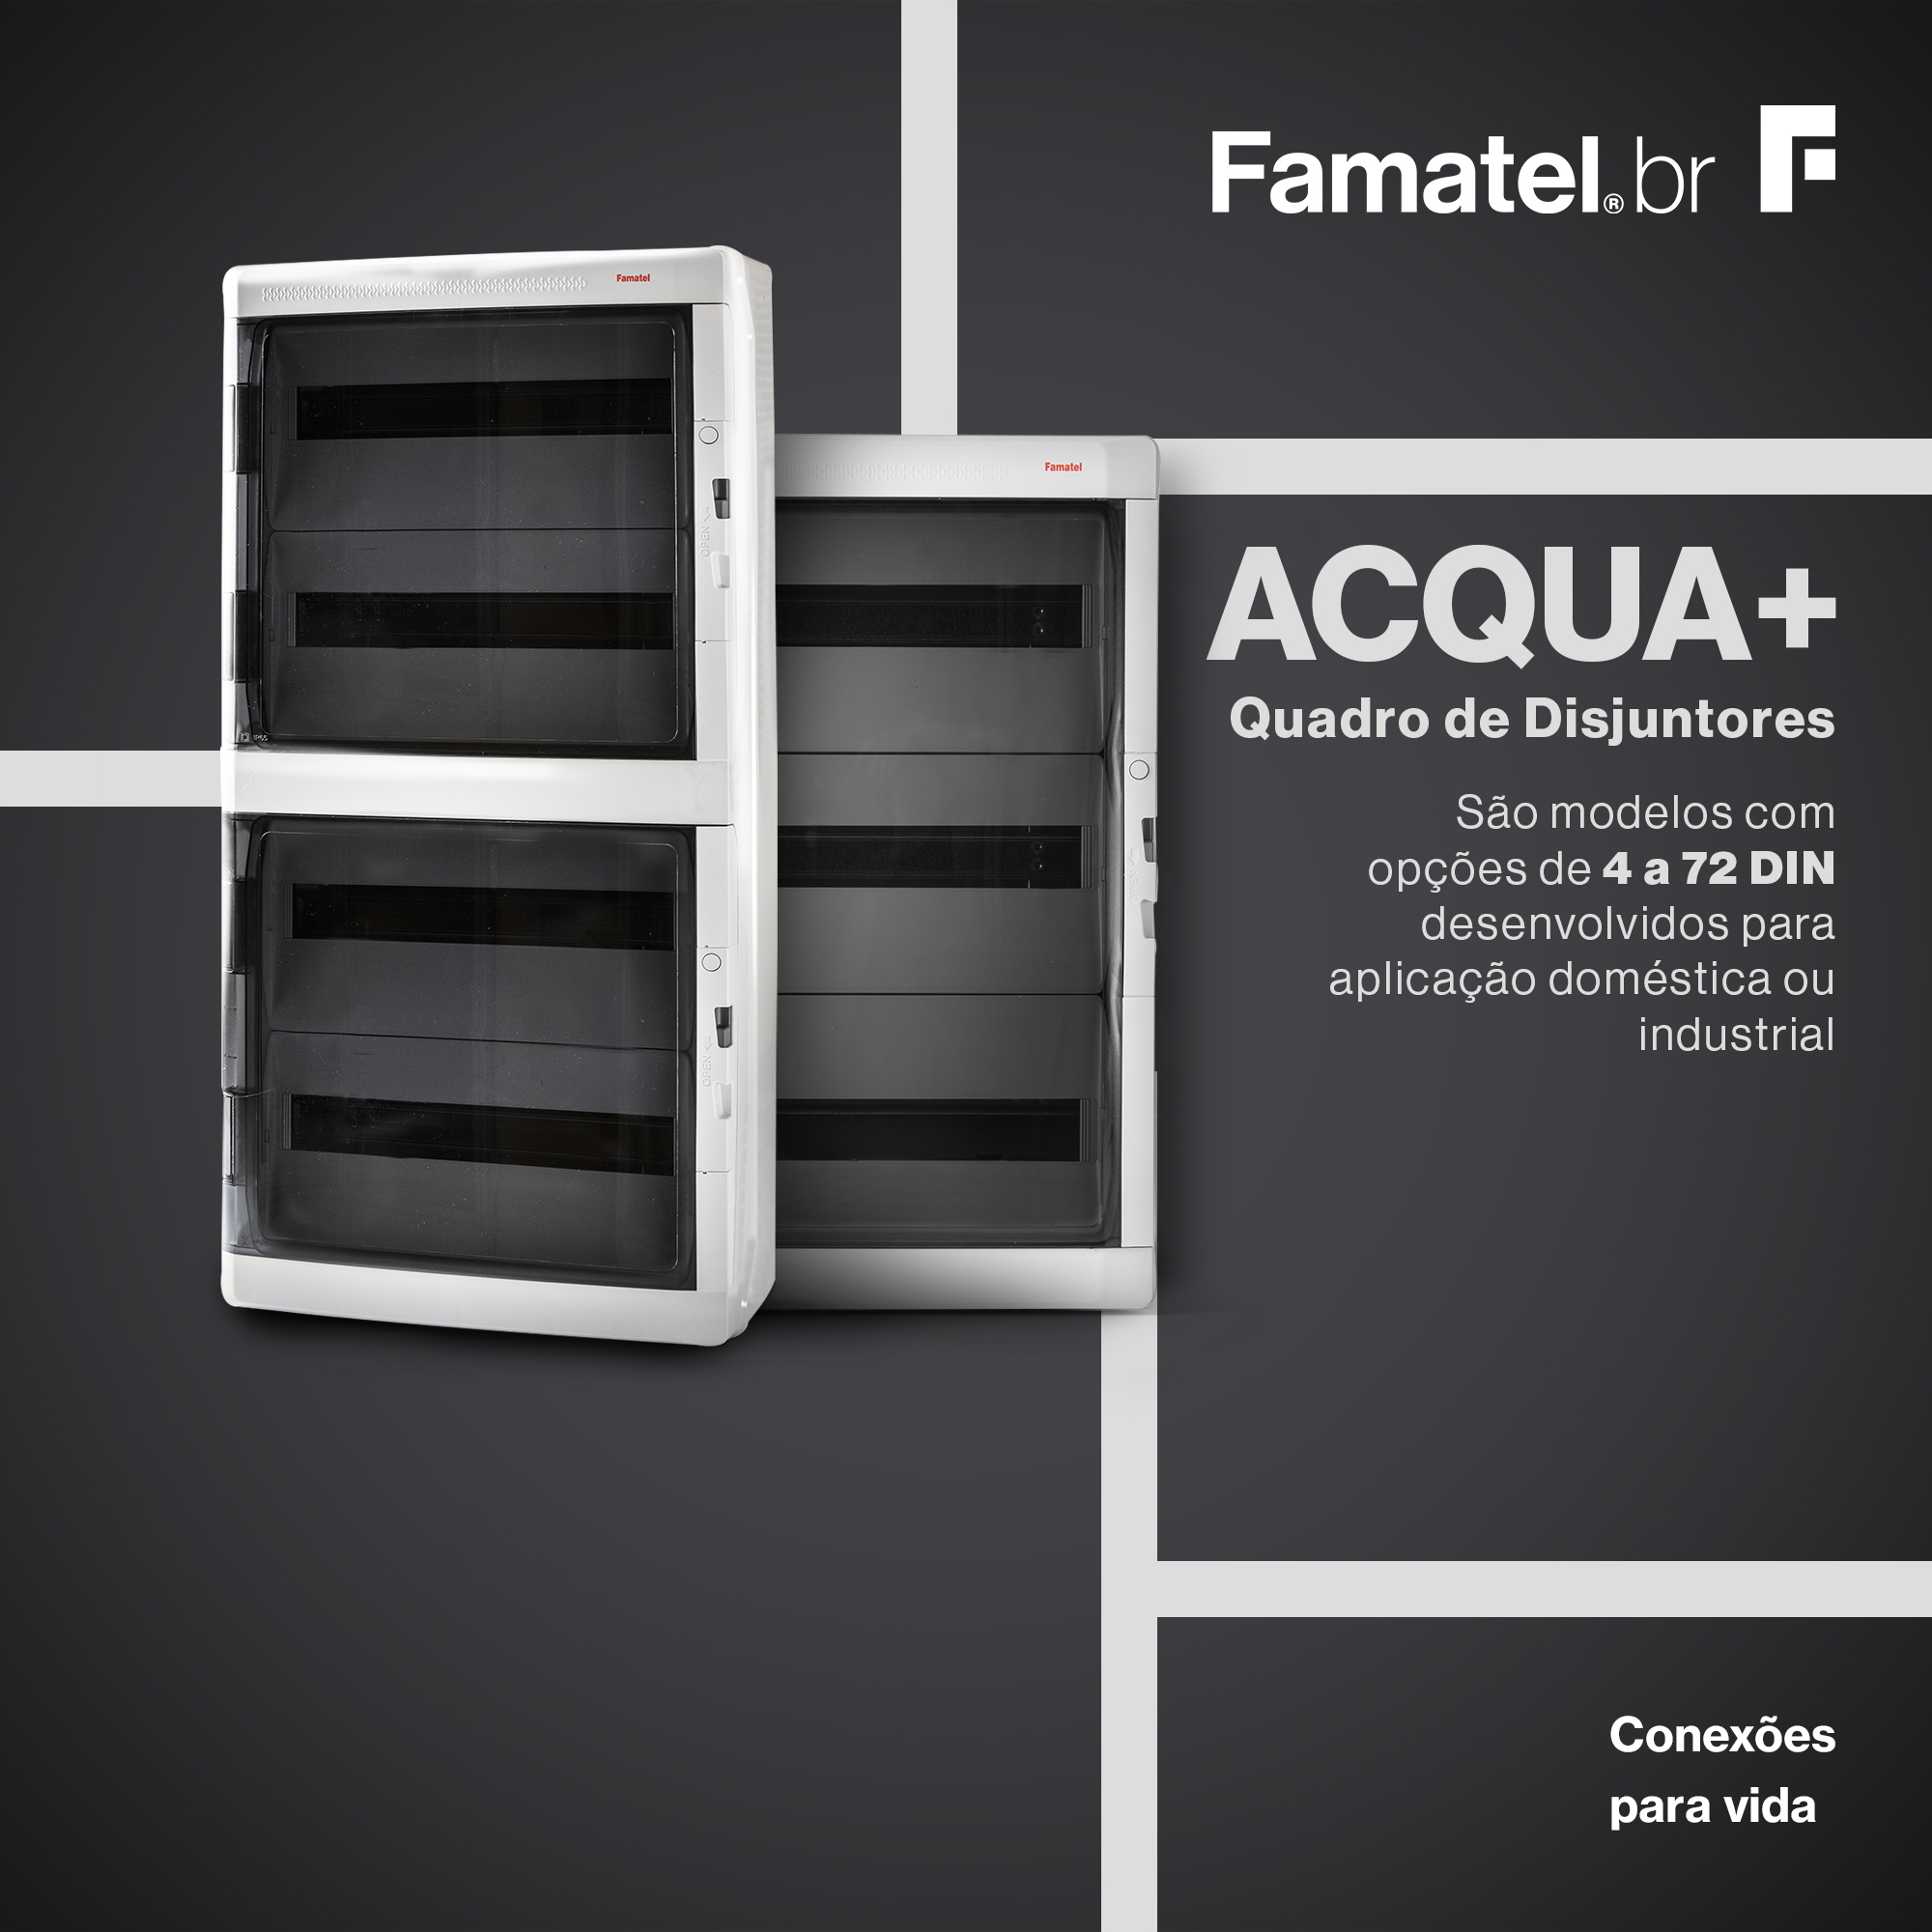 ACQUA + - Quadro de disjuntores:

São modelos com opções de 4 a 72 DIN desenvolvidos para aplicação doméstica ou industrial